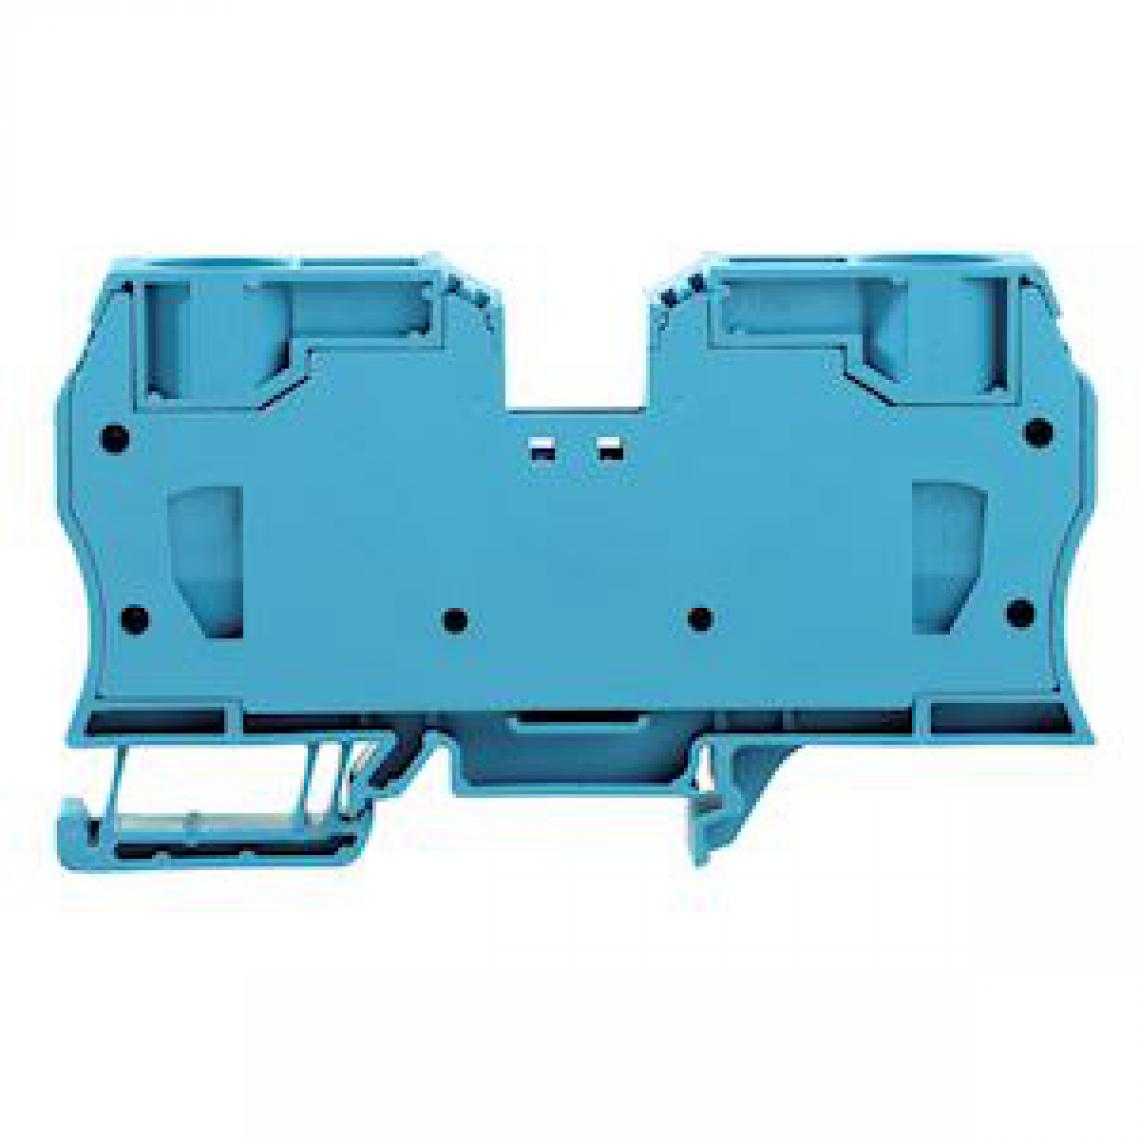 Weidmuller - bloc de jonction - passage - a ressort - zdu 35 mm2 - bleu - weidmuller 1739630000 - Autres équipements modulaires